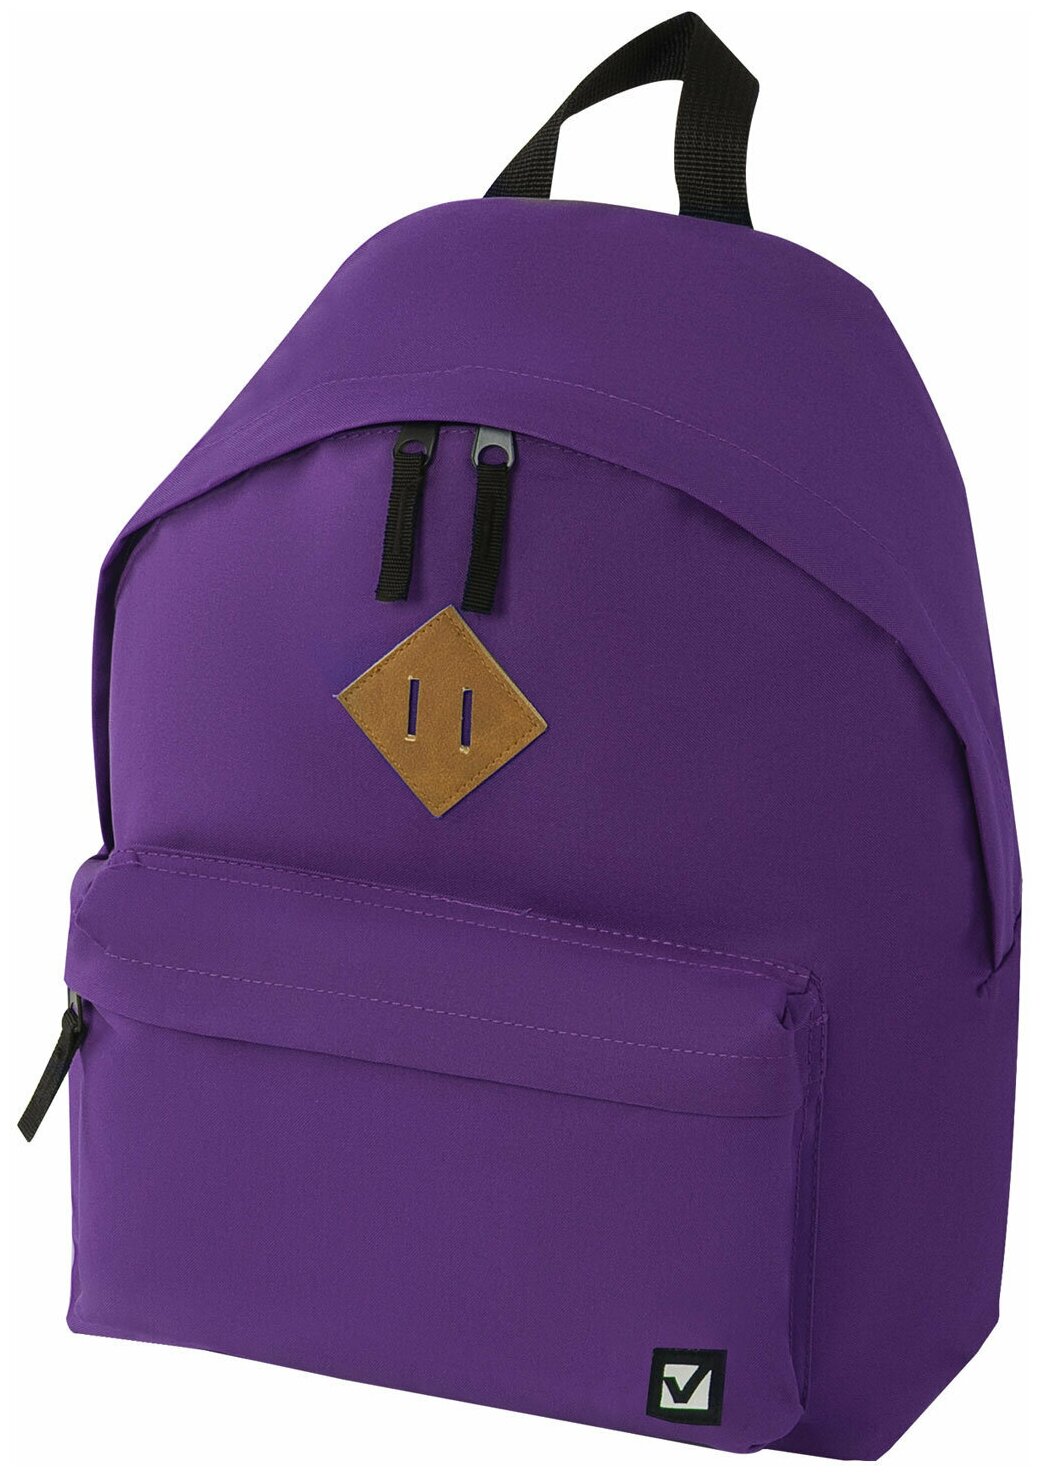 Рюкзак молодежный Brauberg, сити-формат (410х320х140мм) однотонный, фиолетовый (225376)